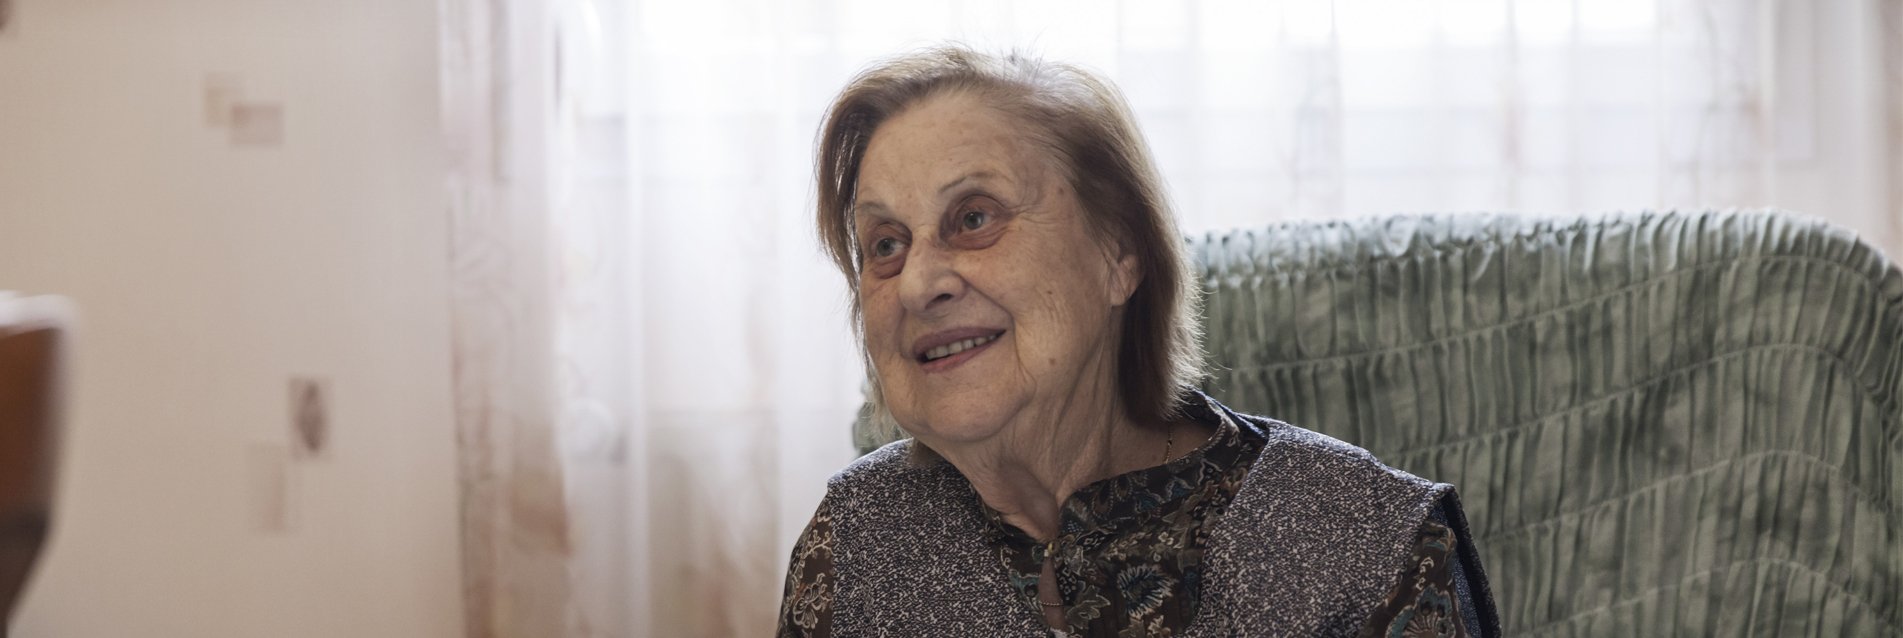 Les actions soutenues par le programme Personnes âgées pendant la crise Covid-19